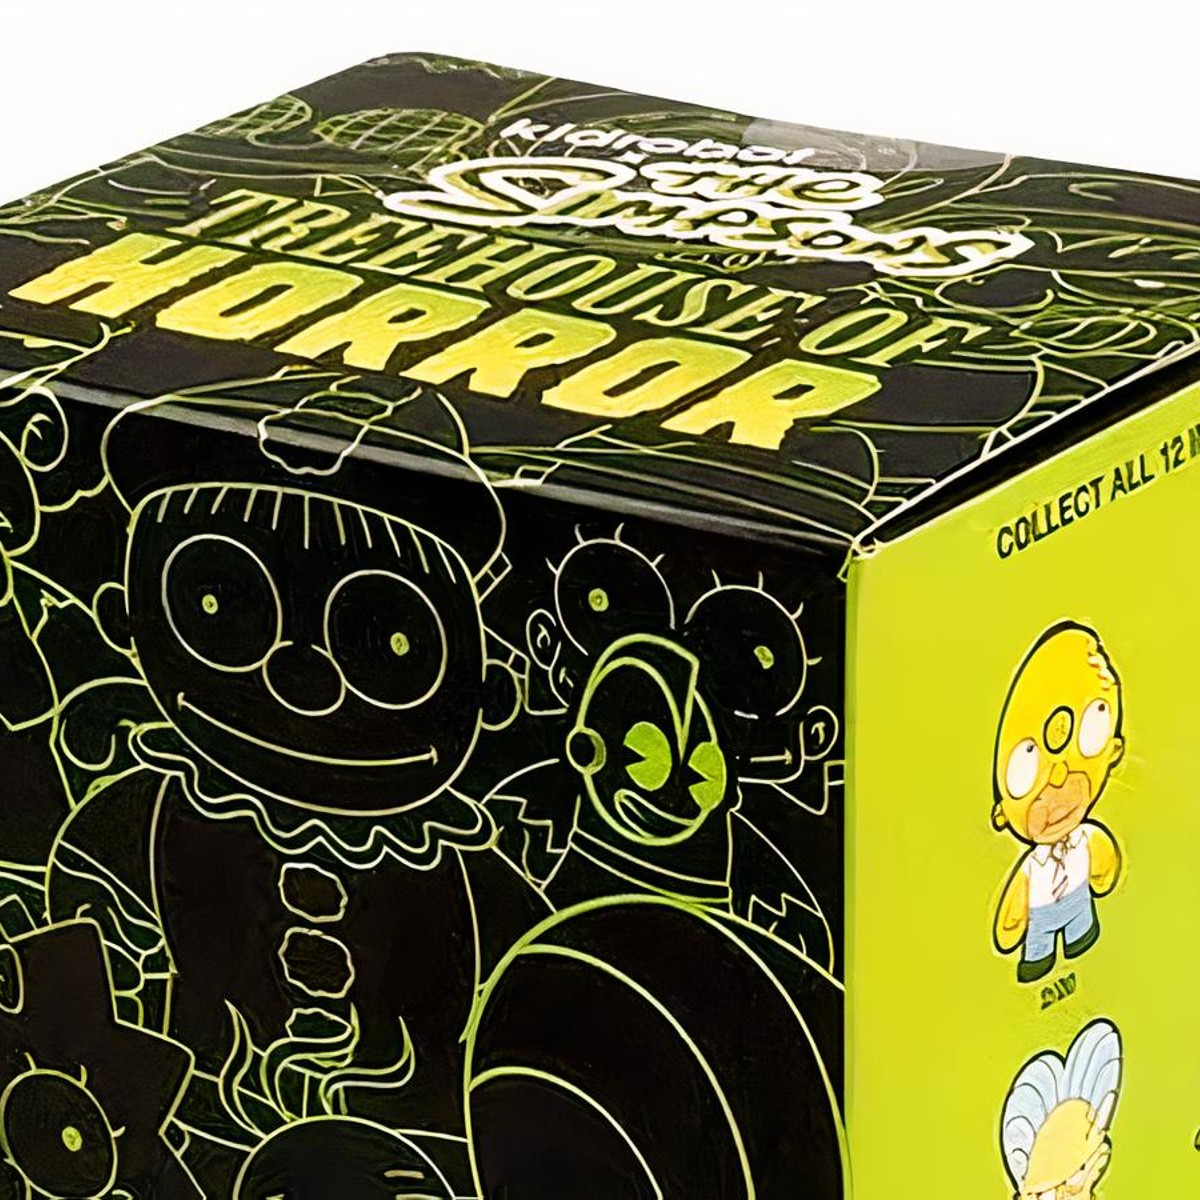 Tokidoki Tokidoki X Spongebob Cooperative Blind Box - Assorted